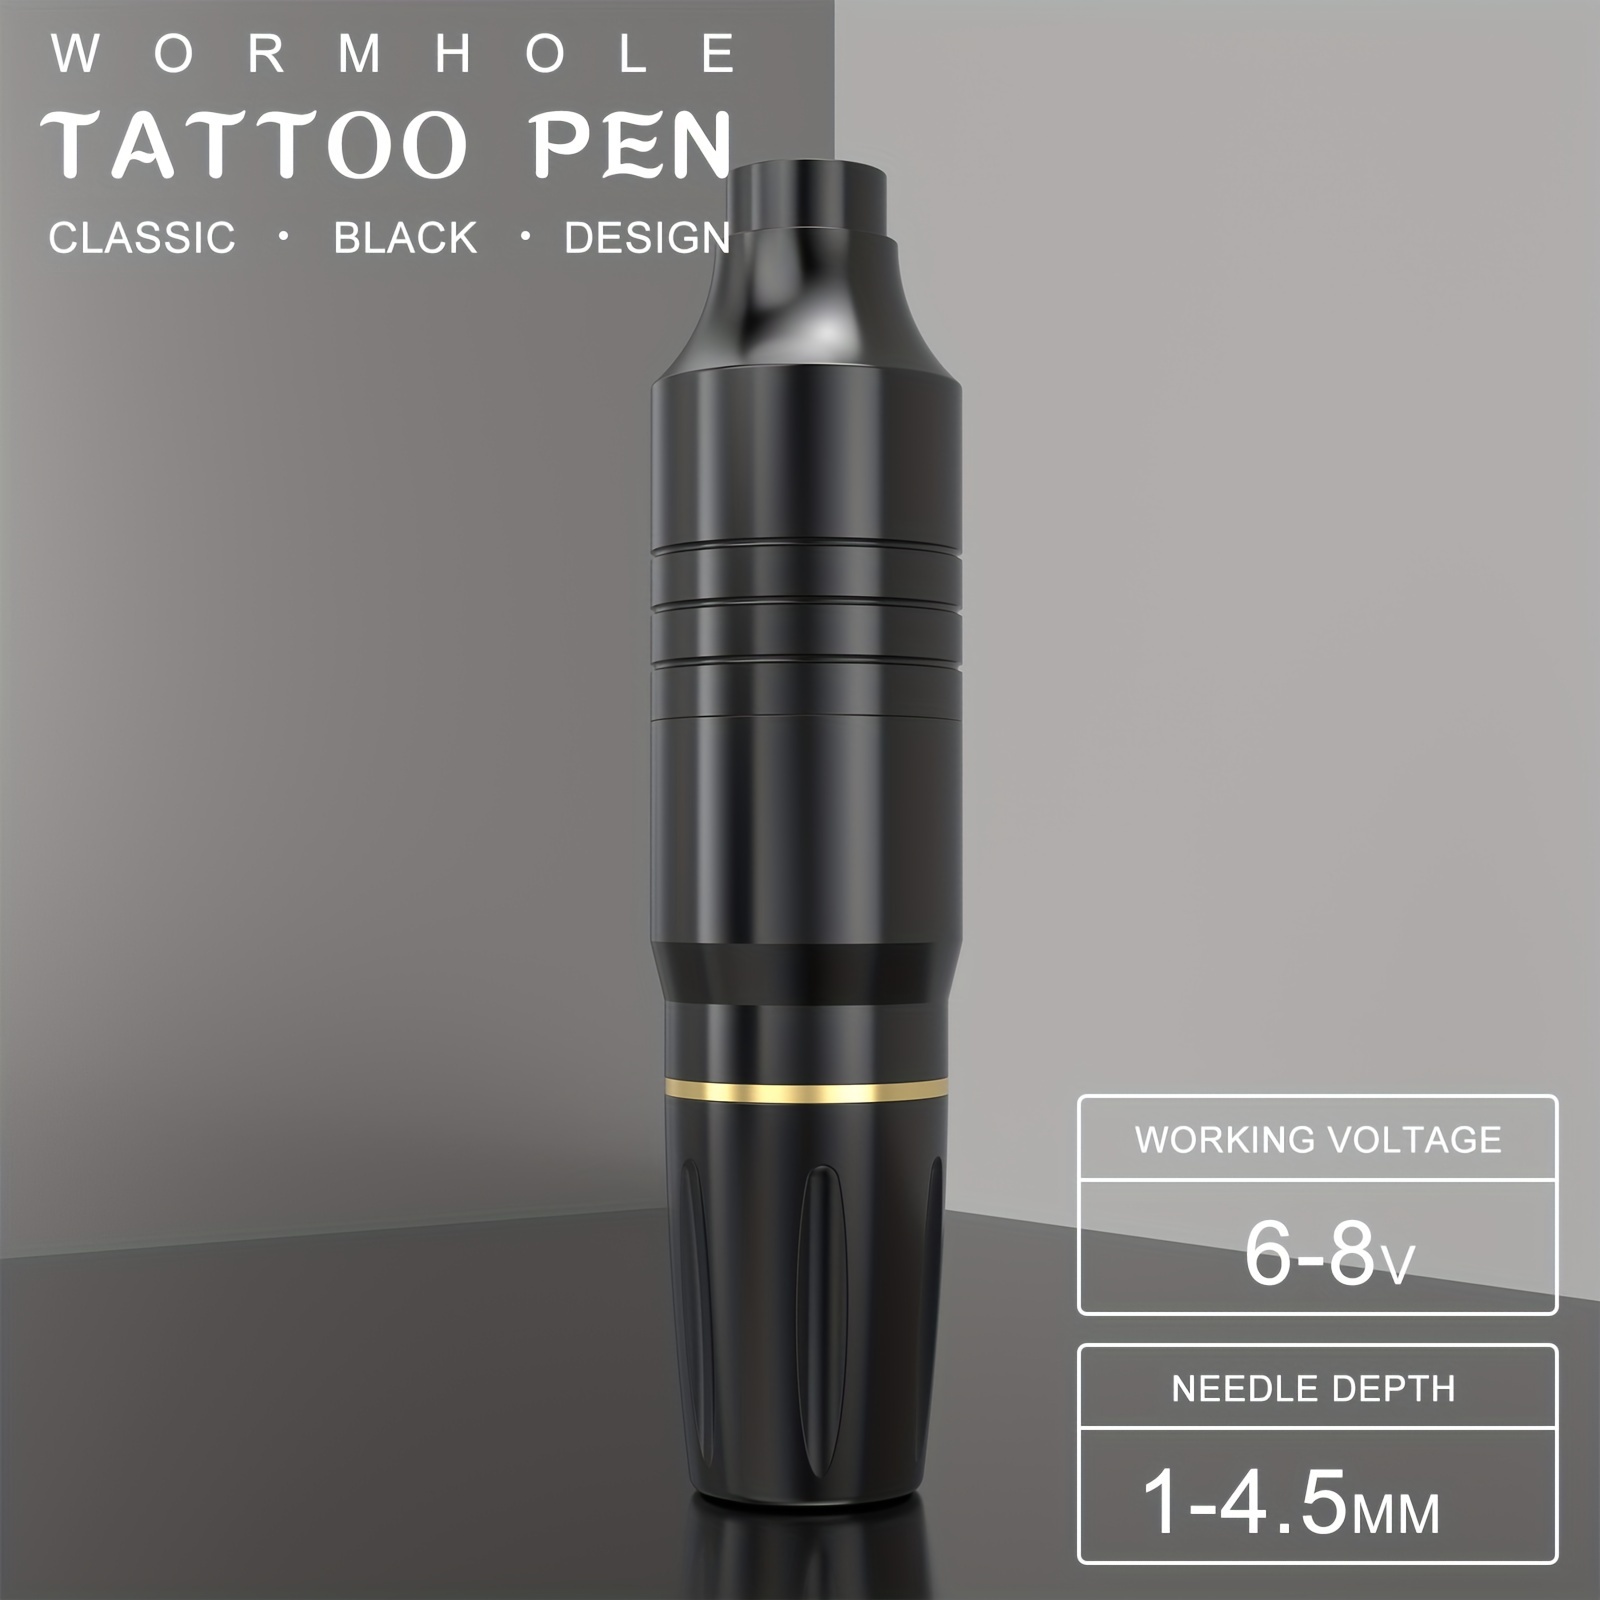 Tattoo Pen Kit with Wireless Tattoo Pen Catridge Needles Wormhole